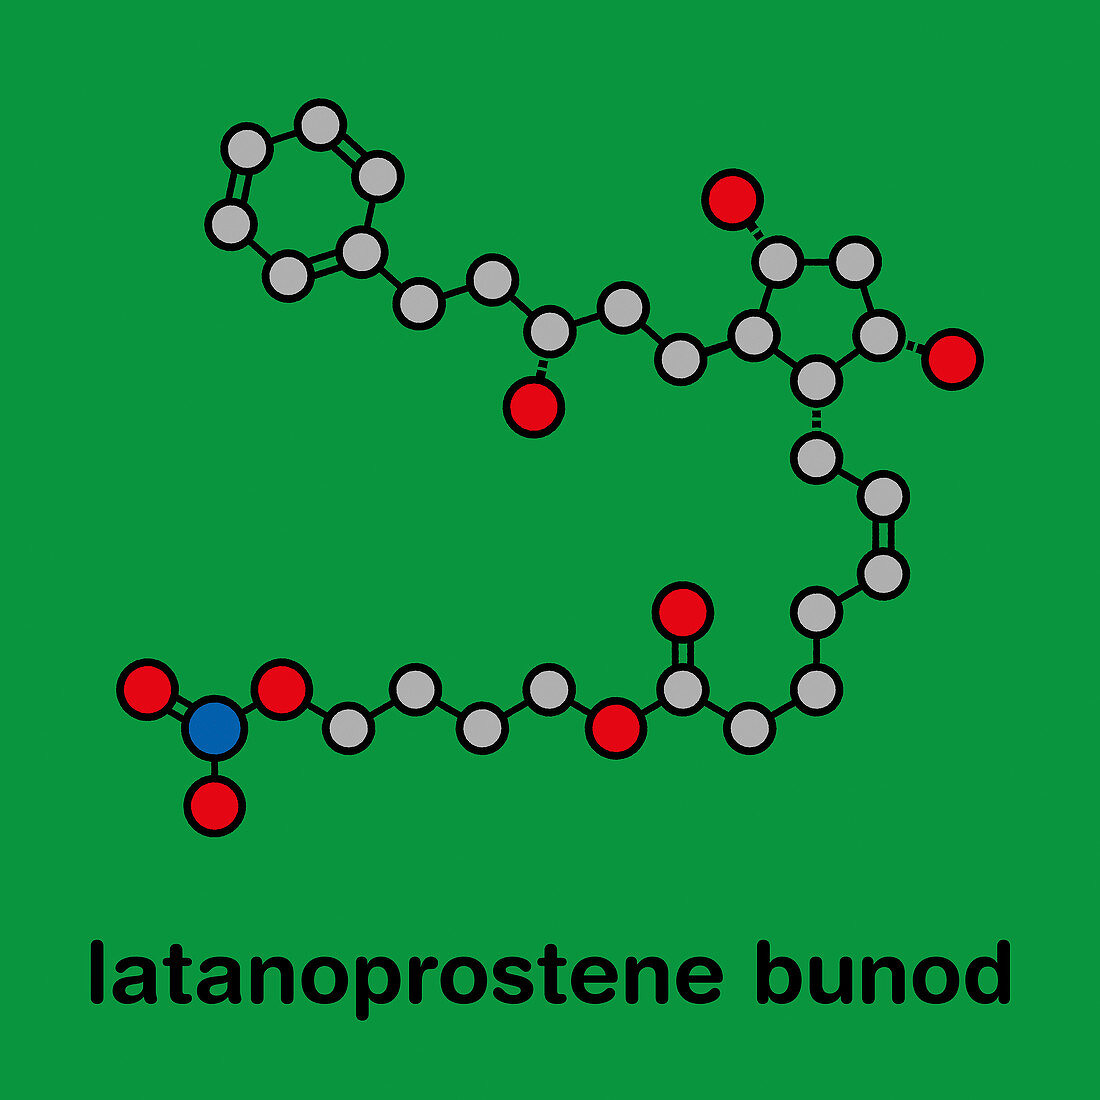 Latanoprostene bunod eye drug molecule